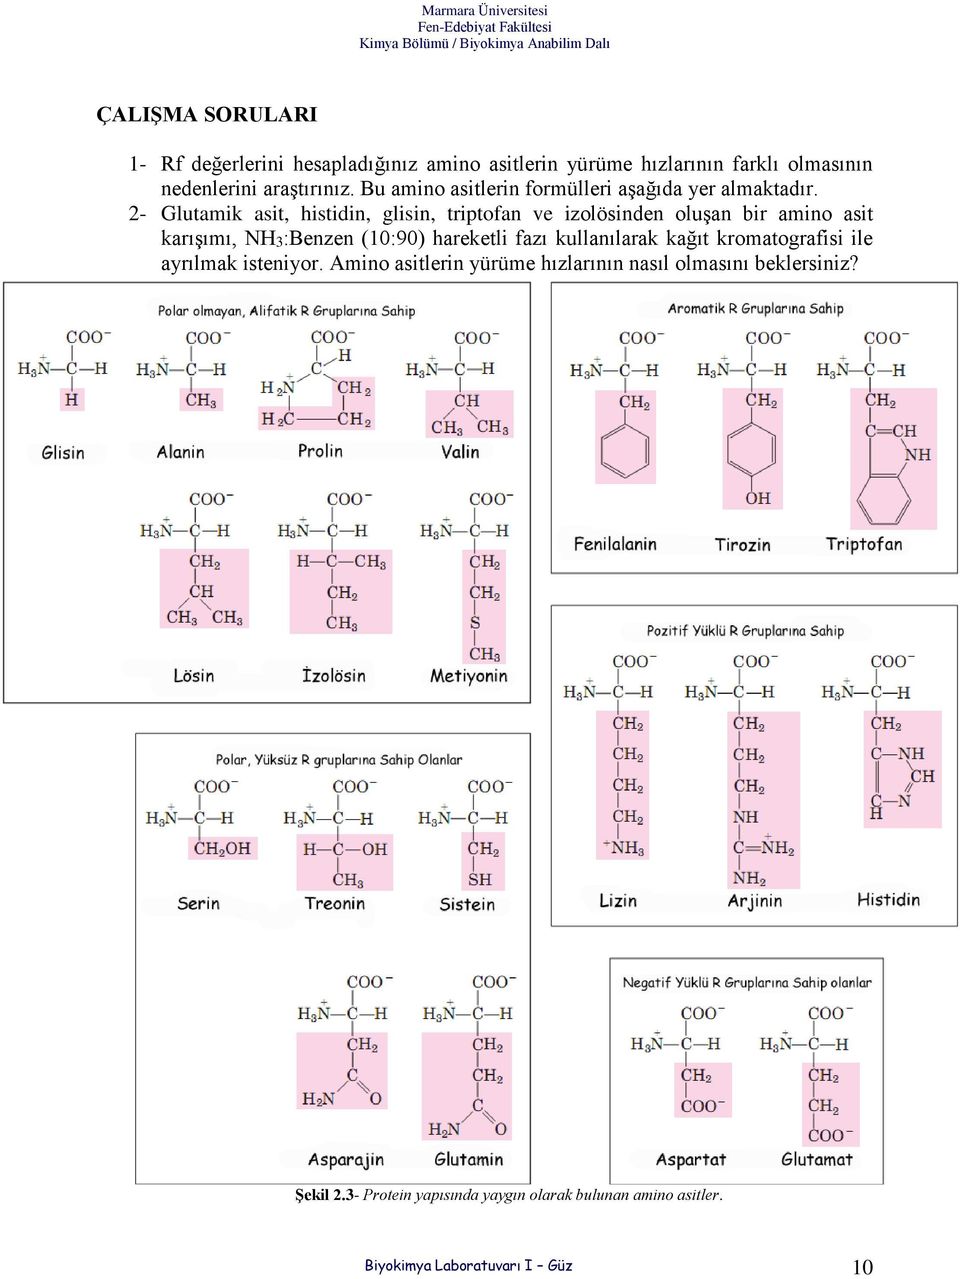 2- Glutamik asit, histidin, glisin, triptofan ve izolösinden oluşan bir amino asit karışımı, NH3:Benzen (10:90) hareketli fazı